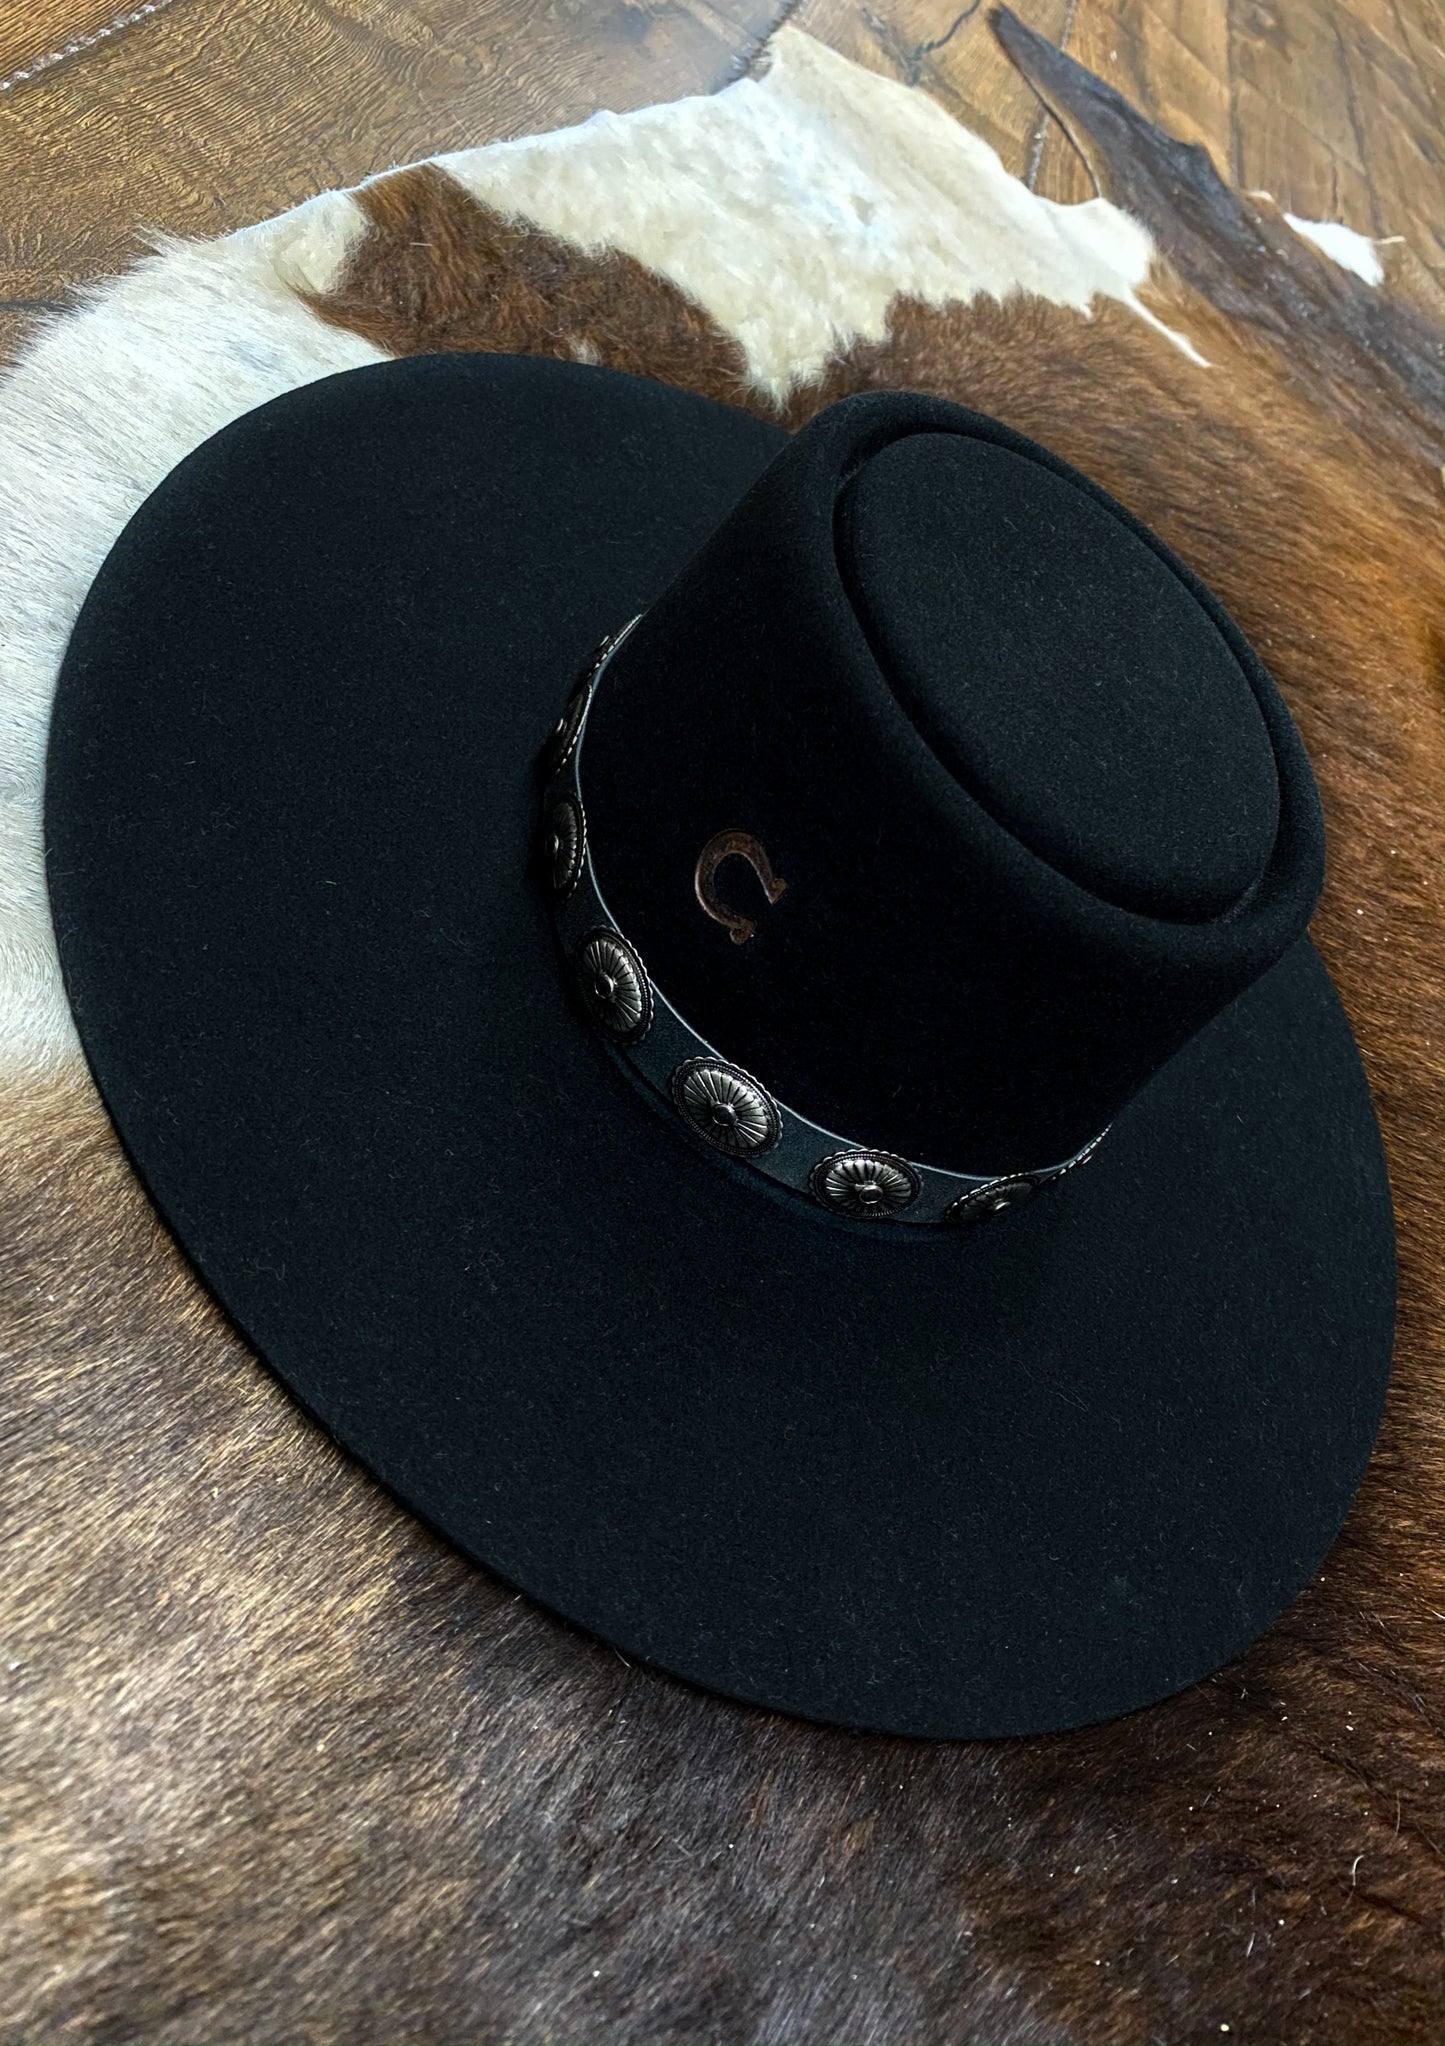 Charlie 1 Horse High Desert Black Hat